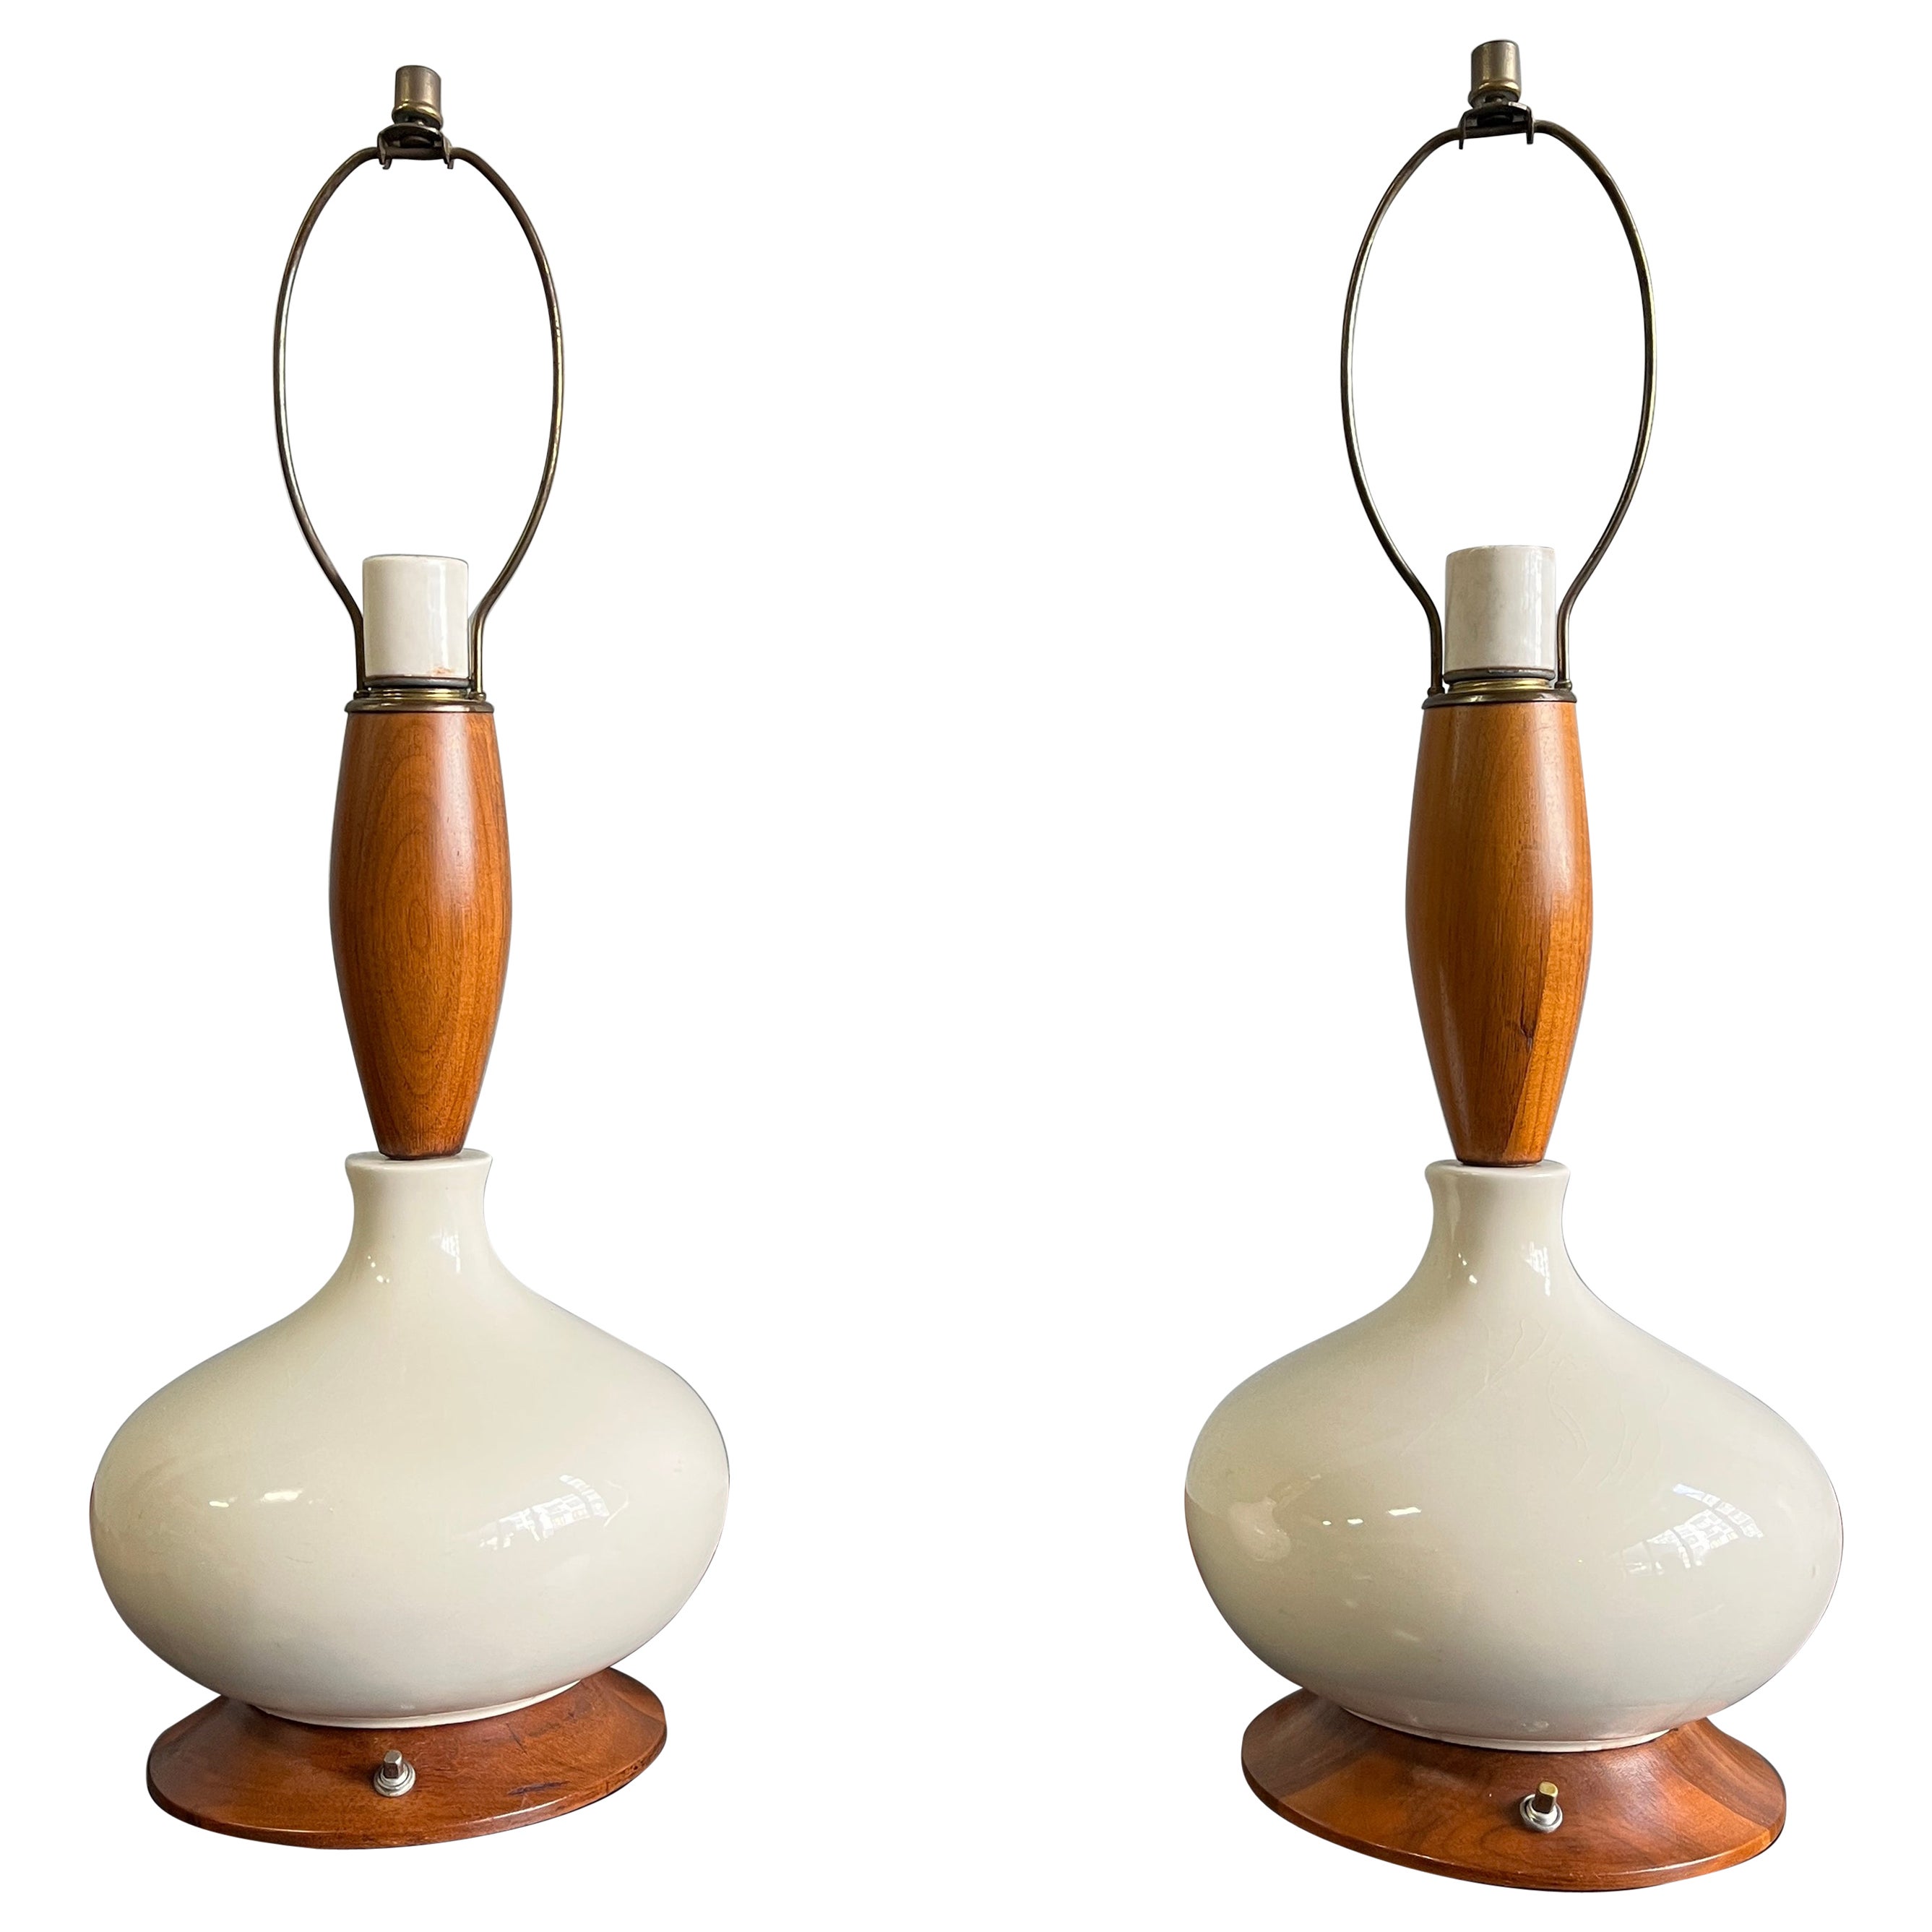 Elegant Pair of Midcentury Ceramic Table Lamps